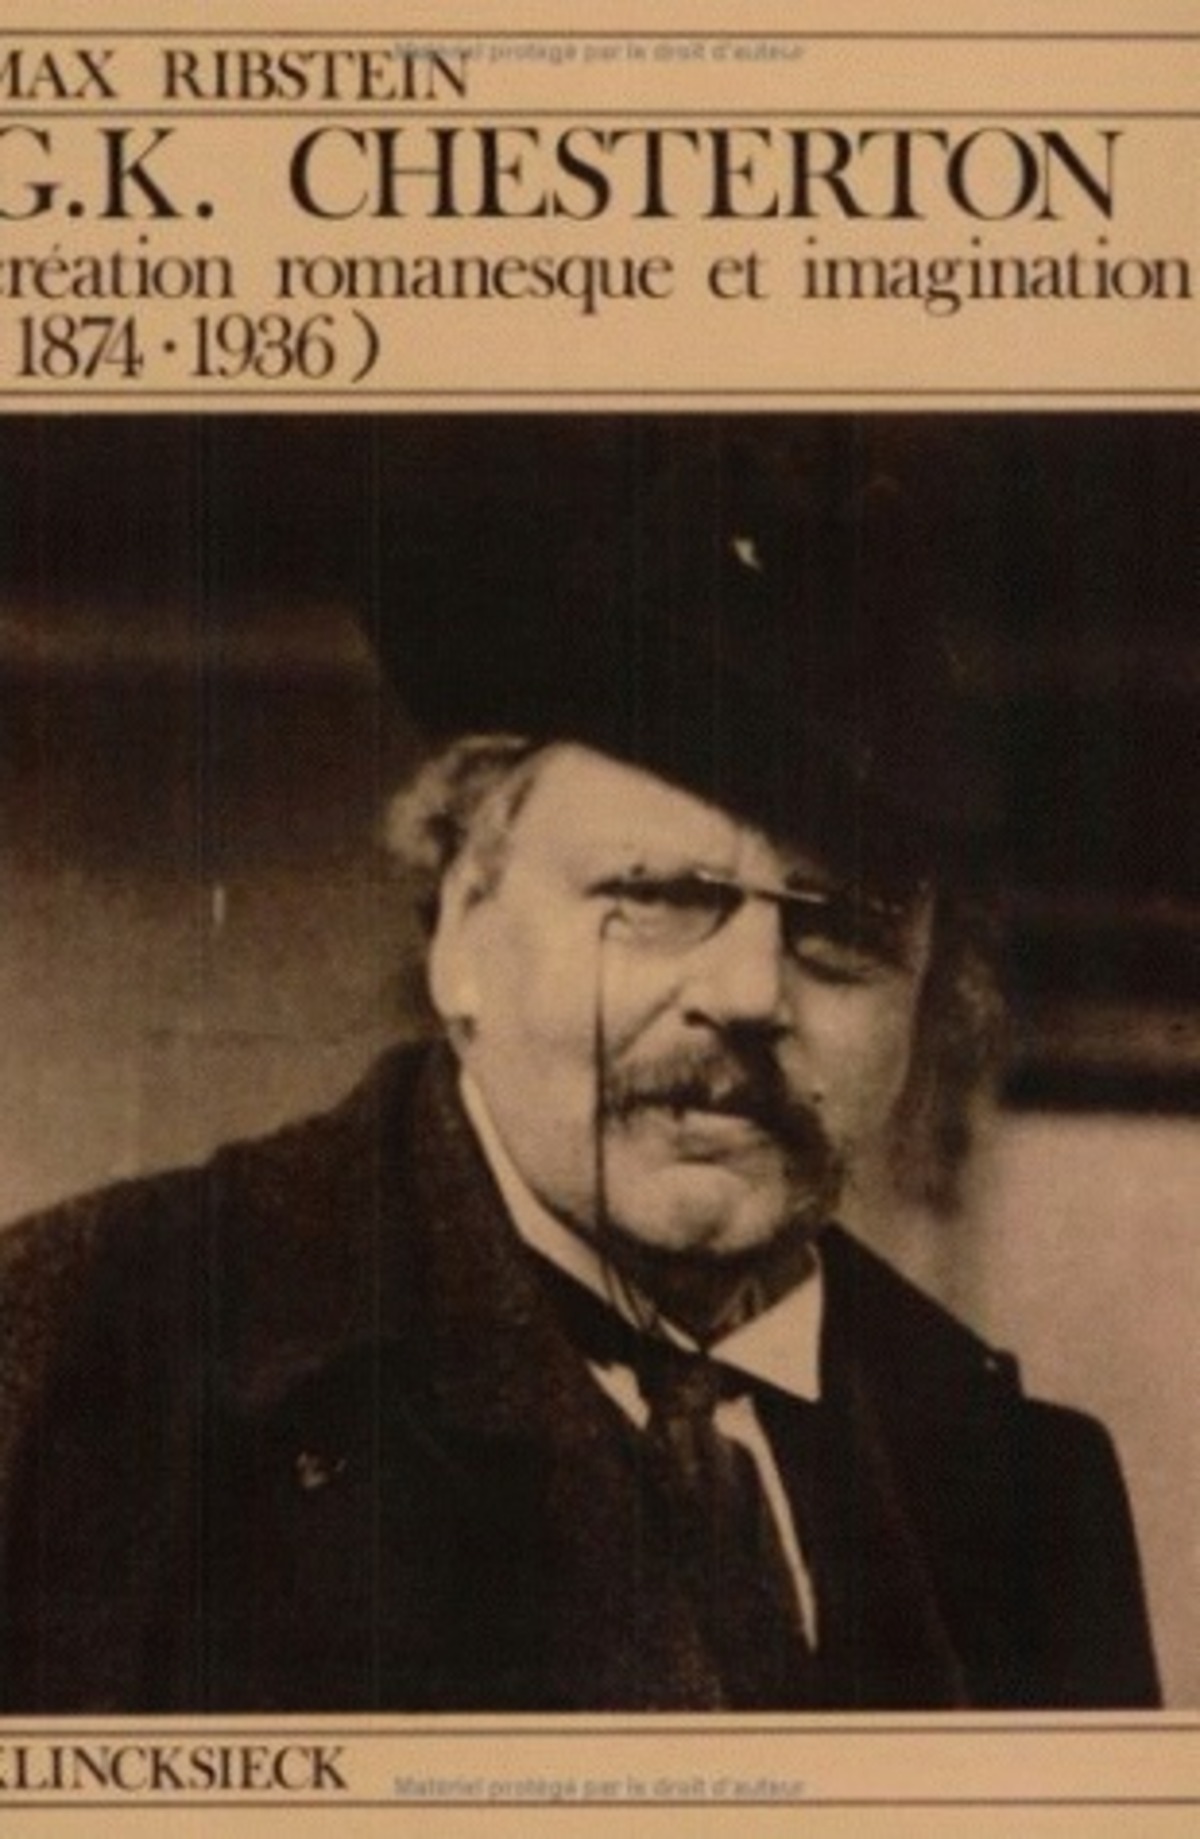 G.K. Chesterton, création romanesque et imagination (1874-1936)